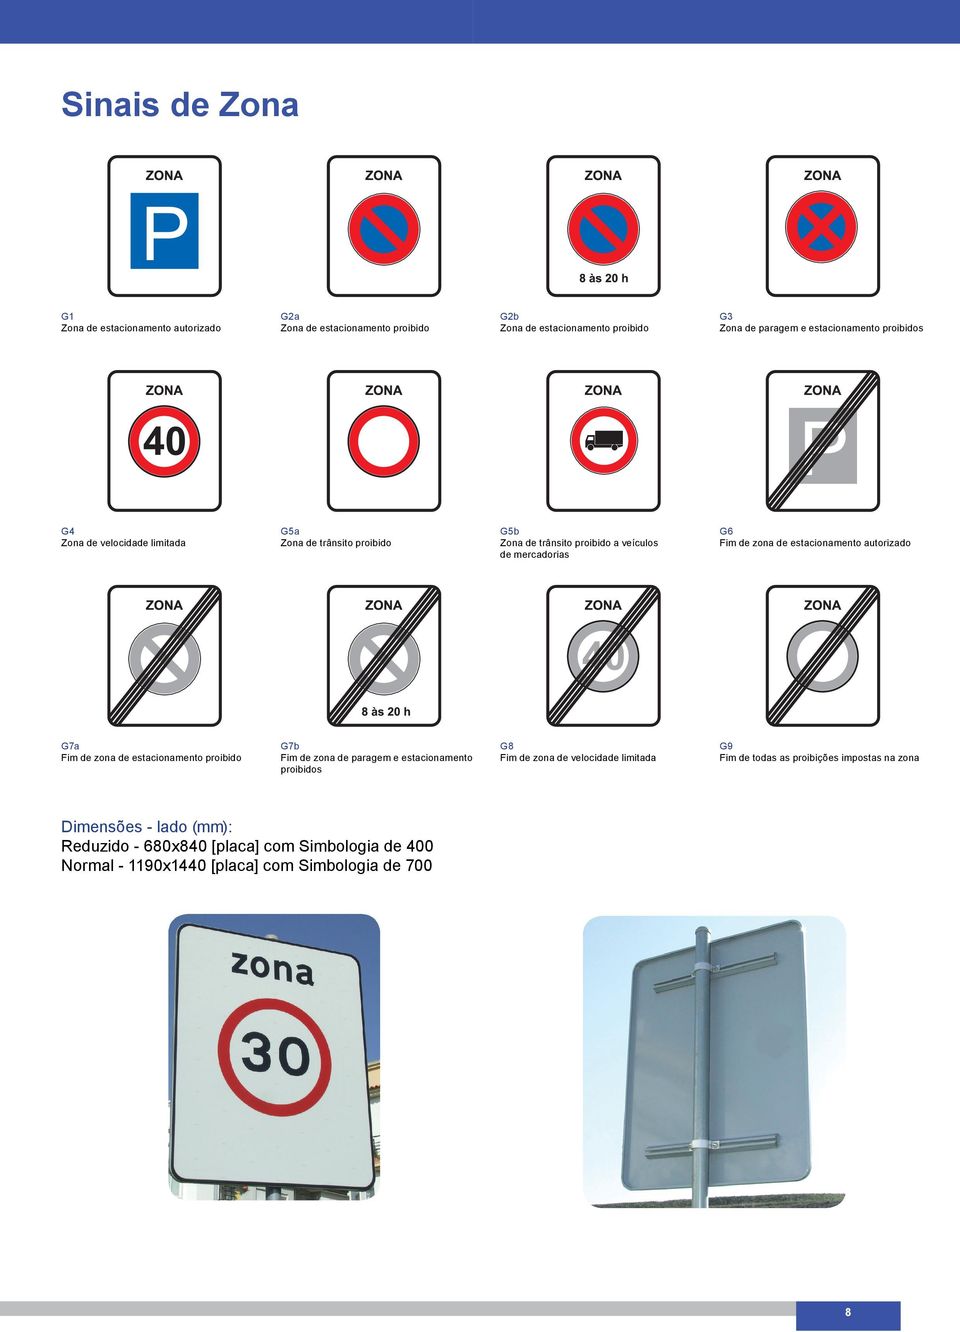 de estacionamento autorizado G7a Fim de zona de estacionamento proibido G7b Fim de zona de paragem e estacionamento proibidos G8 Fim de zona de velocidade